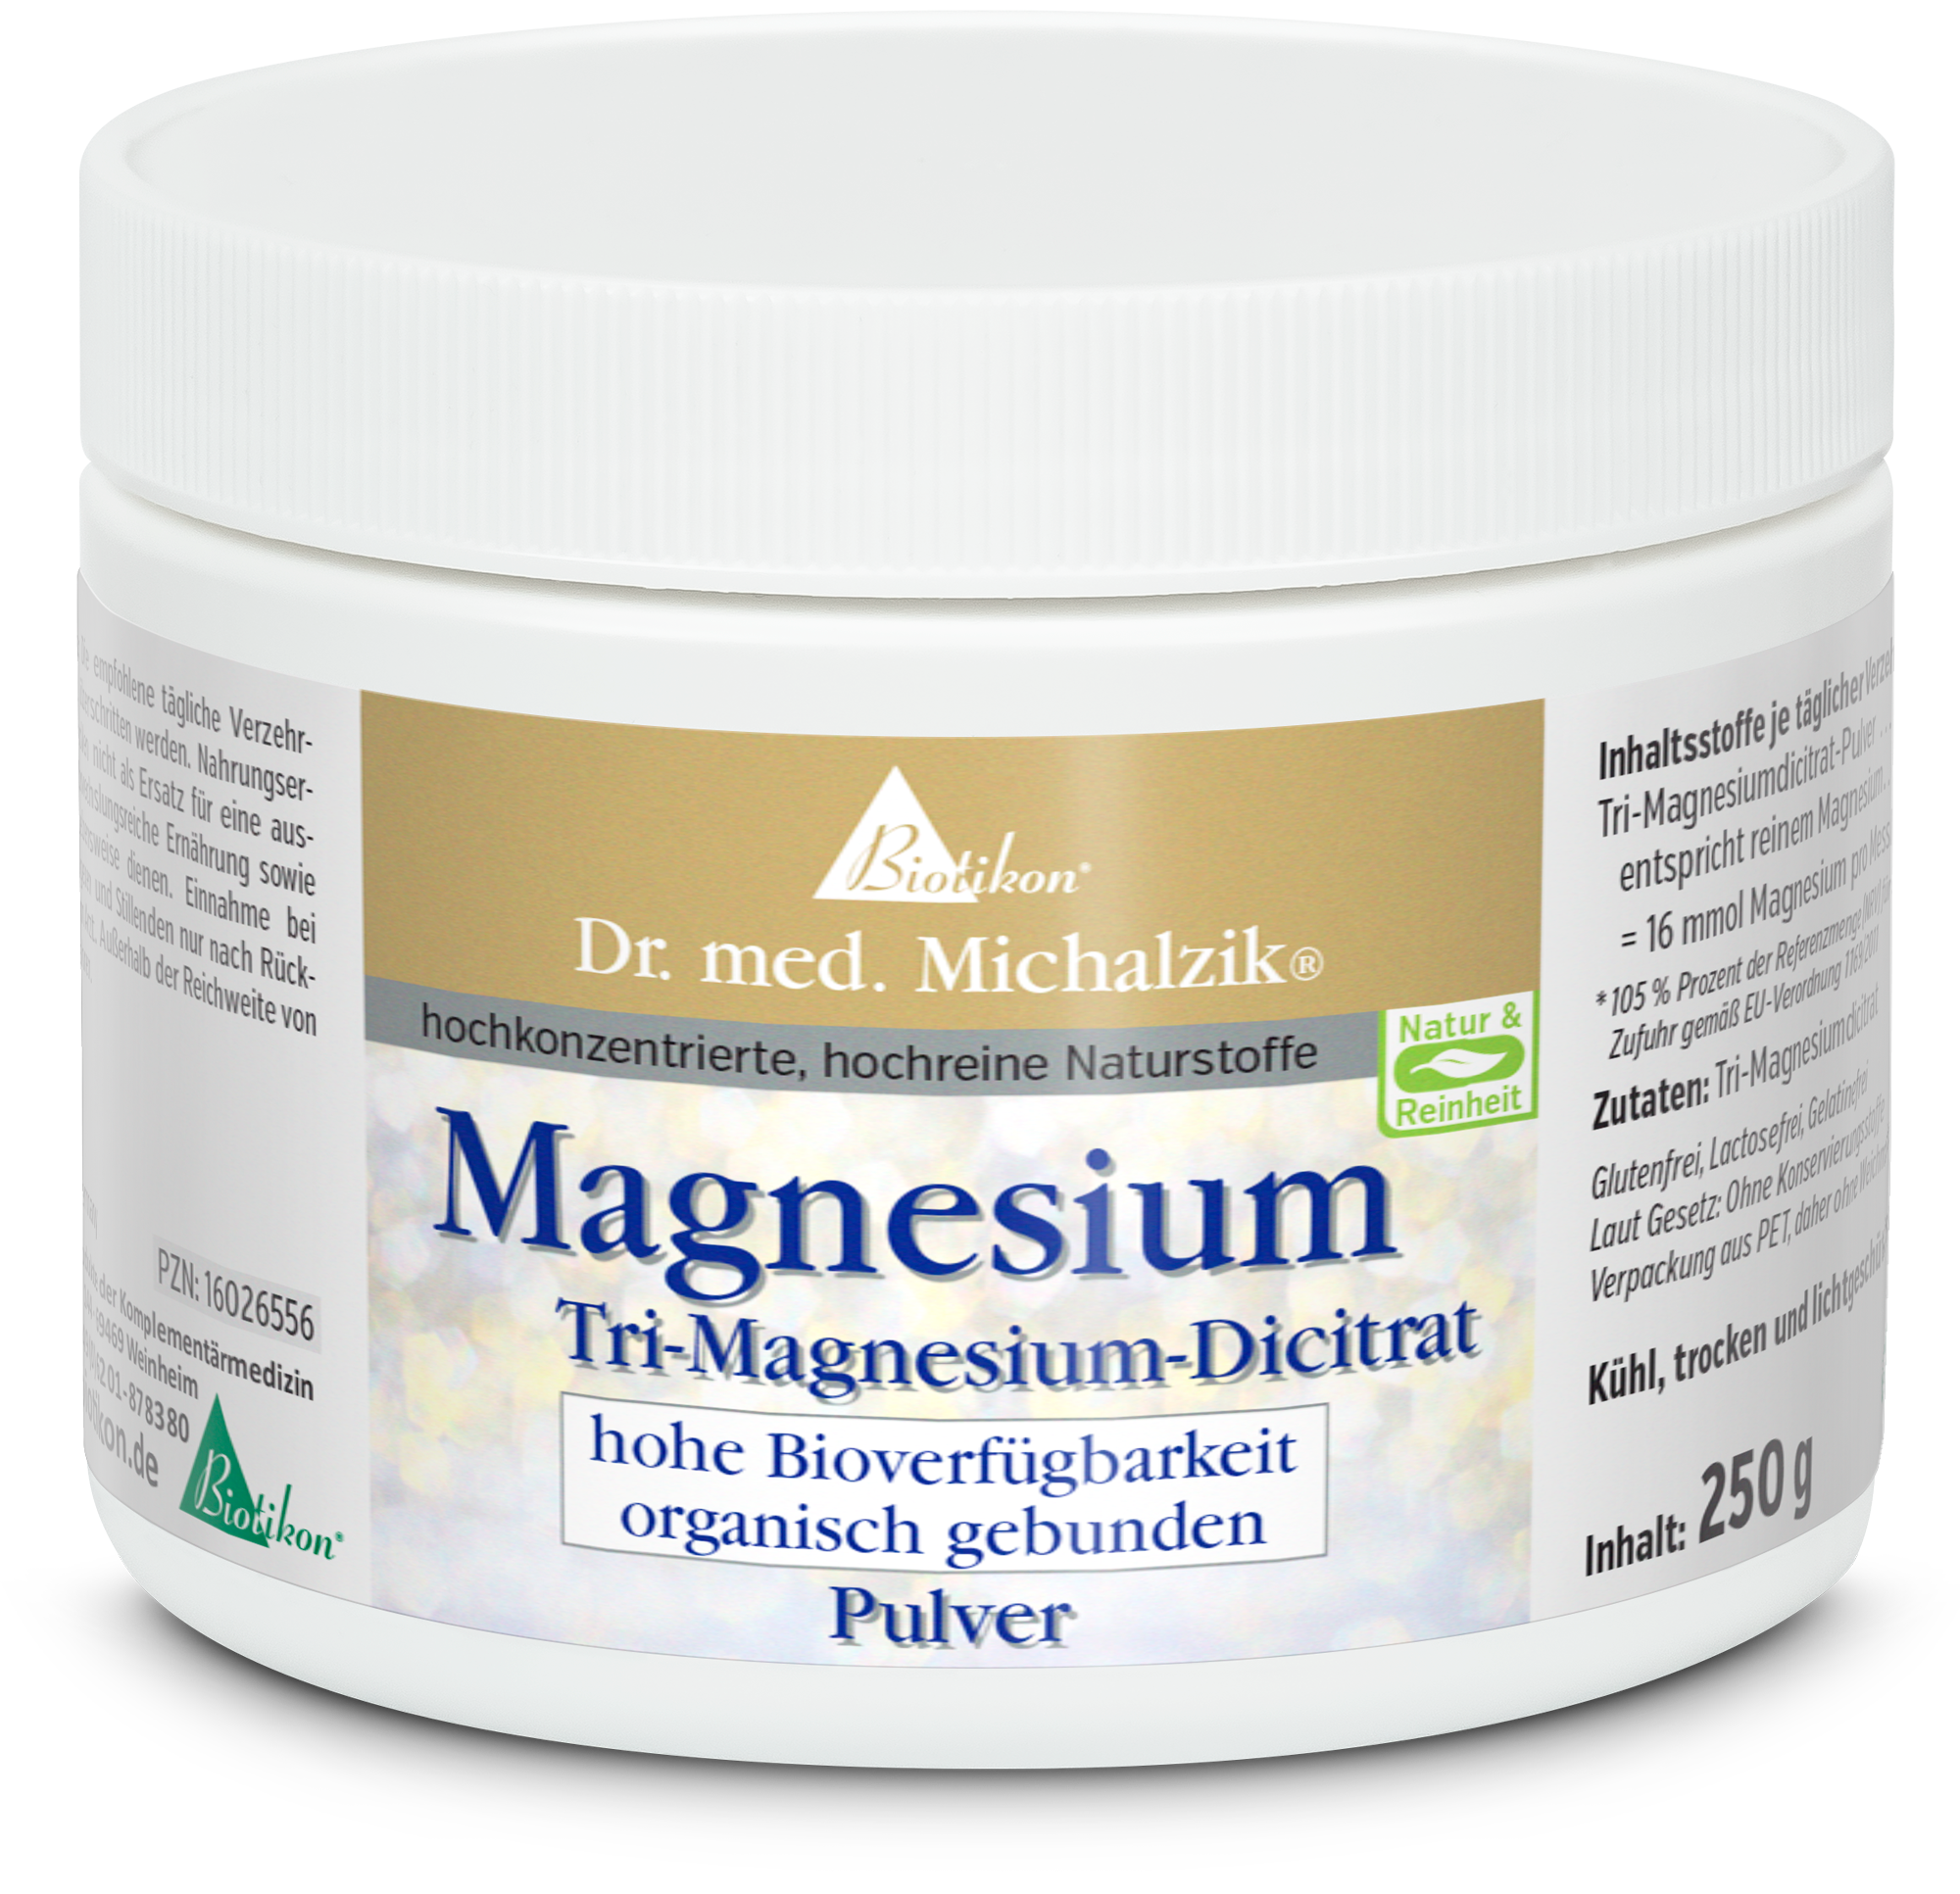 Magnesium - Tri-Magnesium-Dicitrat (Pulver)